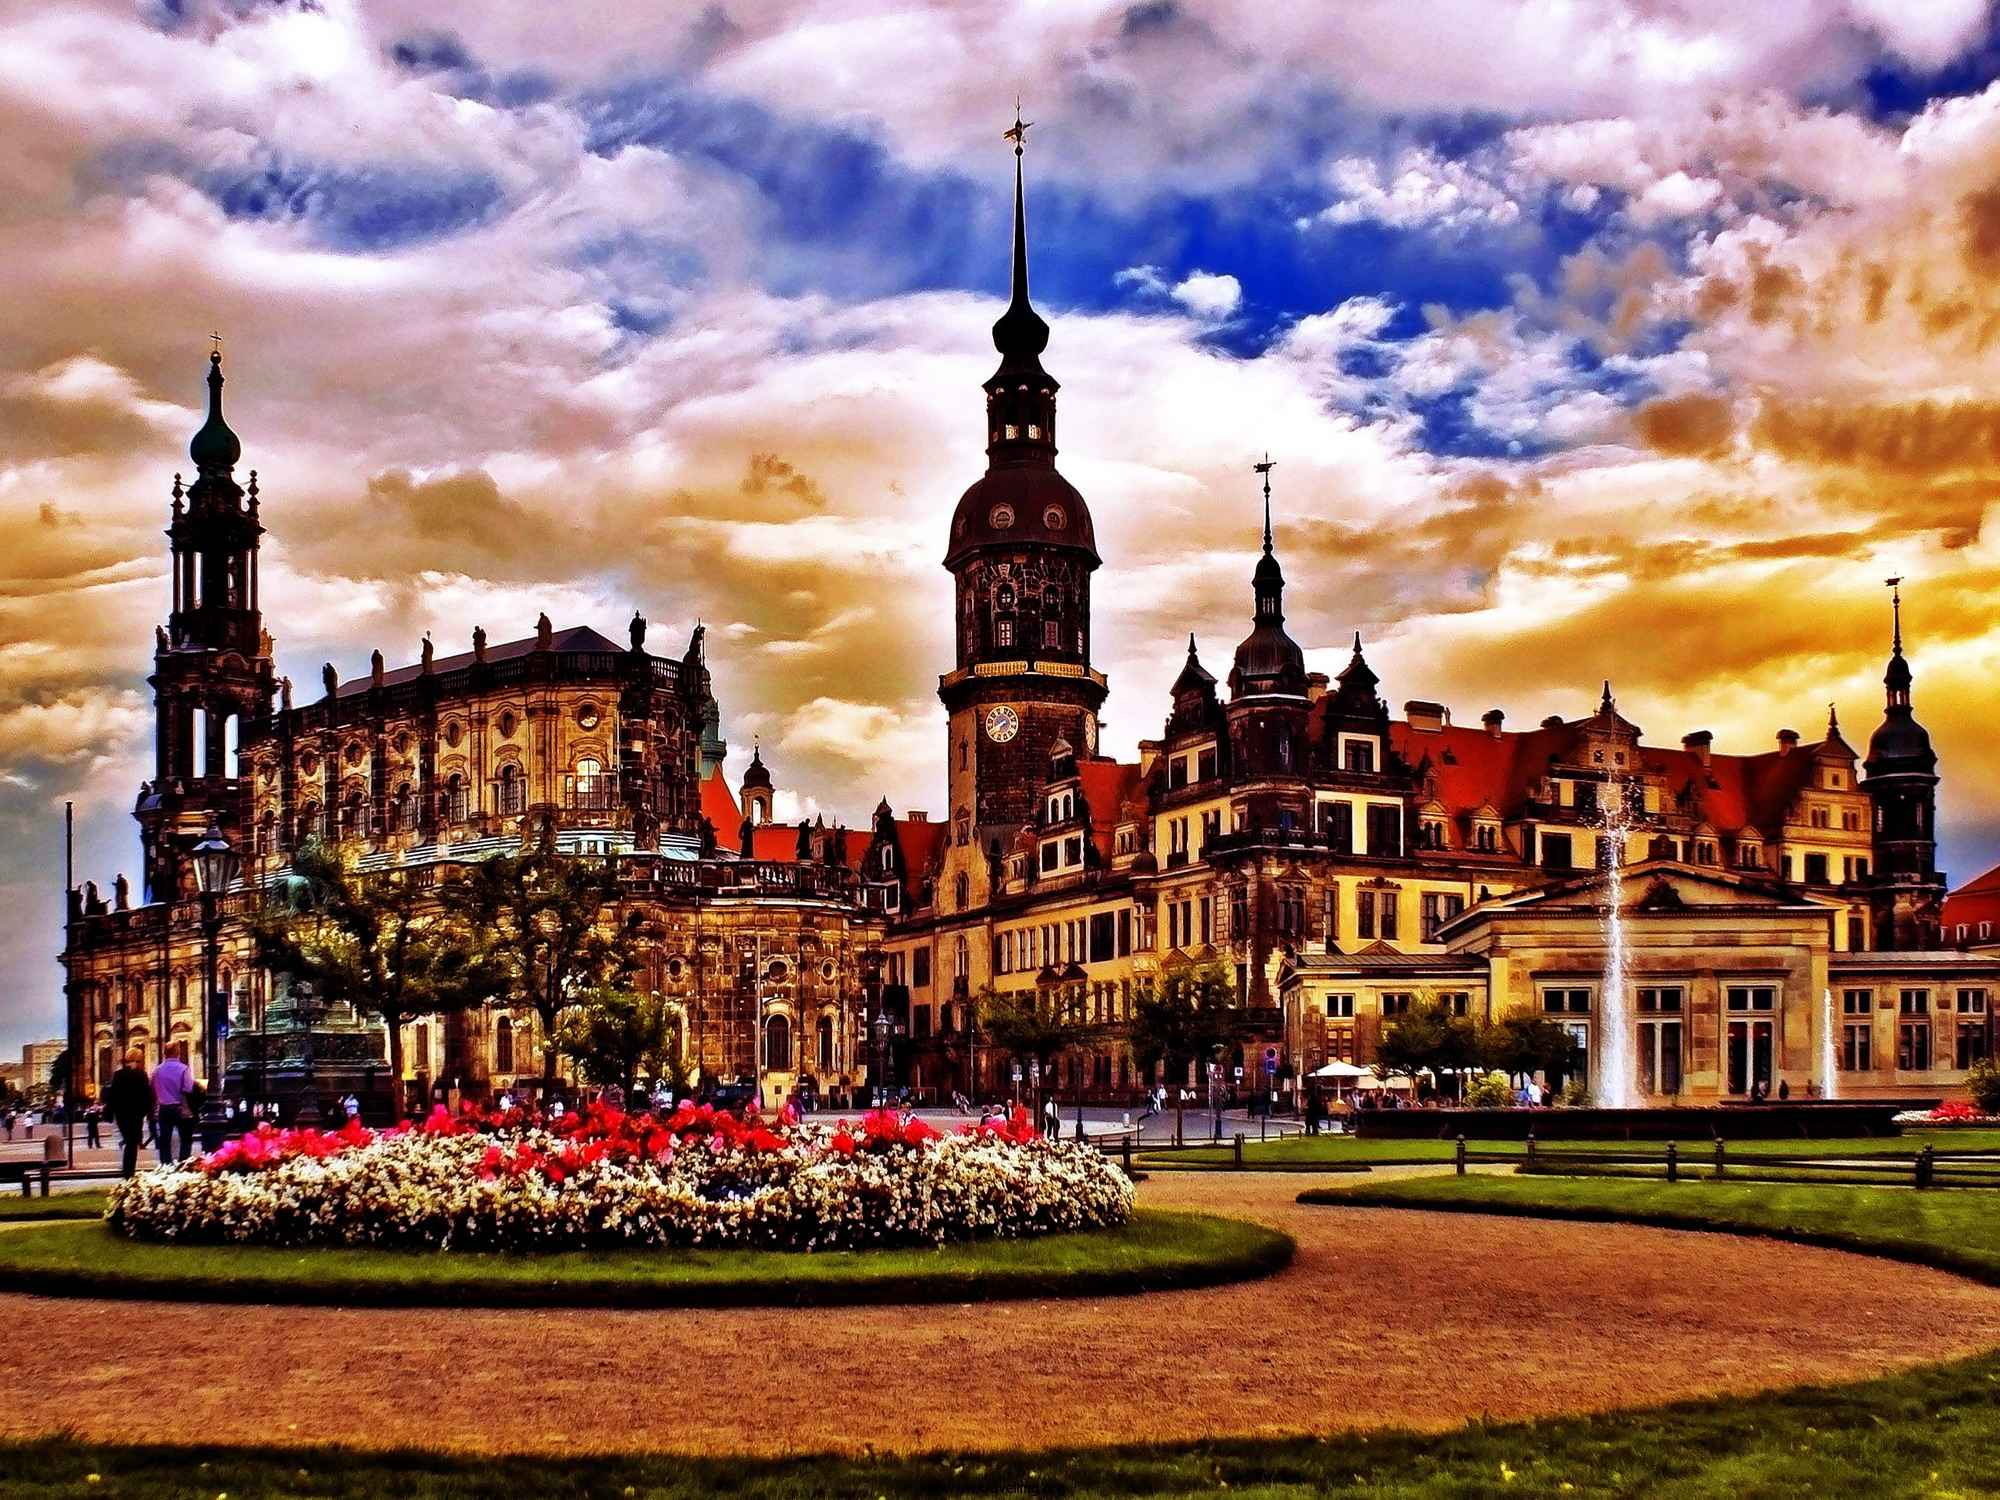 Германия. Прага Дрезден. Дрезден столица Саксонии. Замок в Дрездене. Дрезден центр.